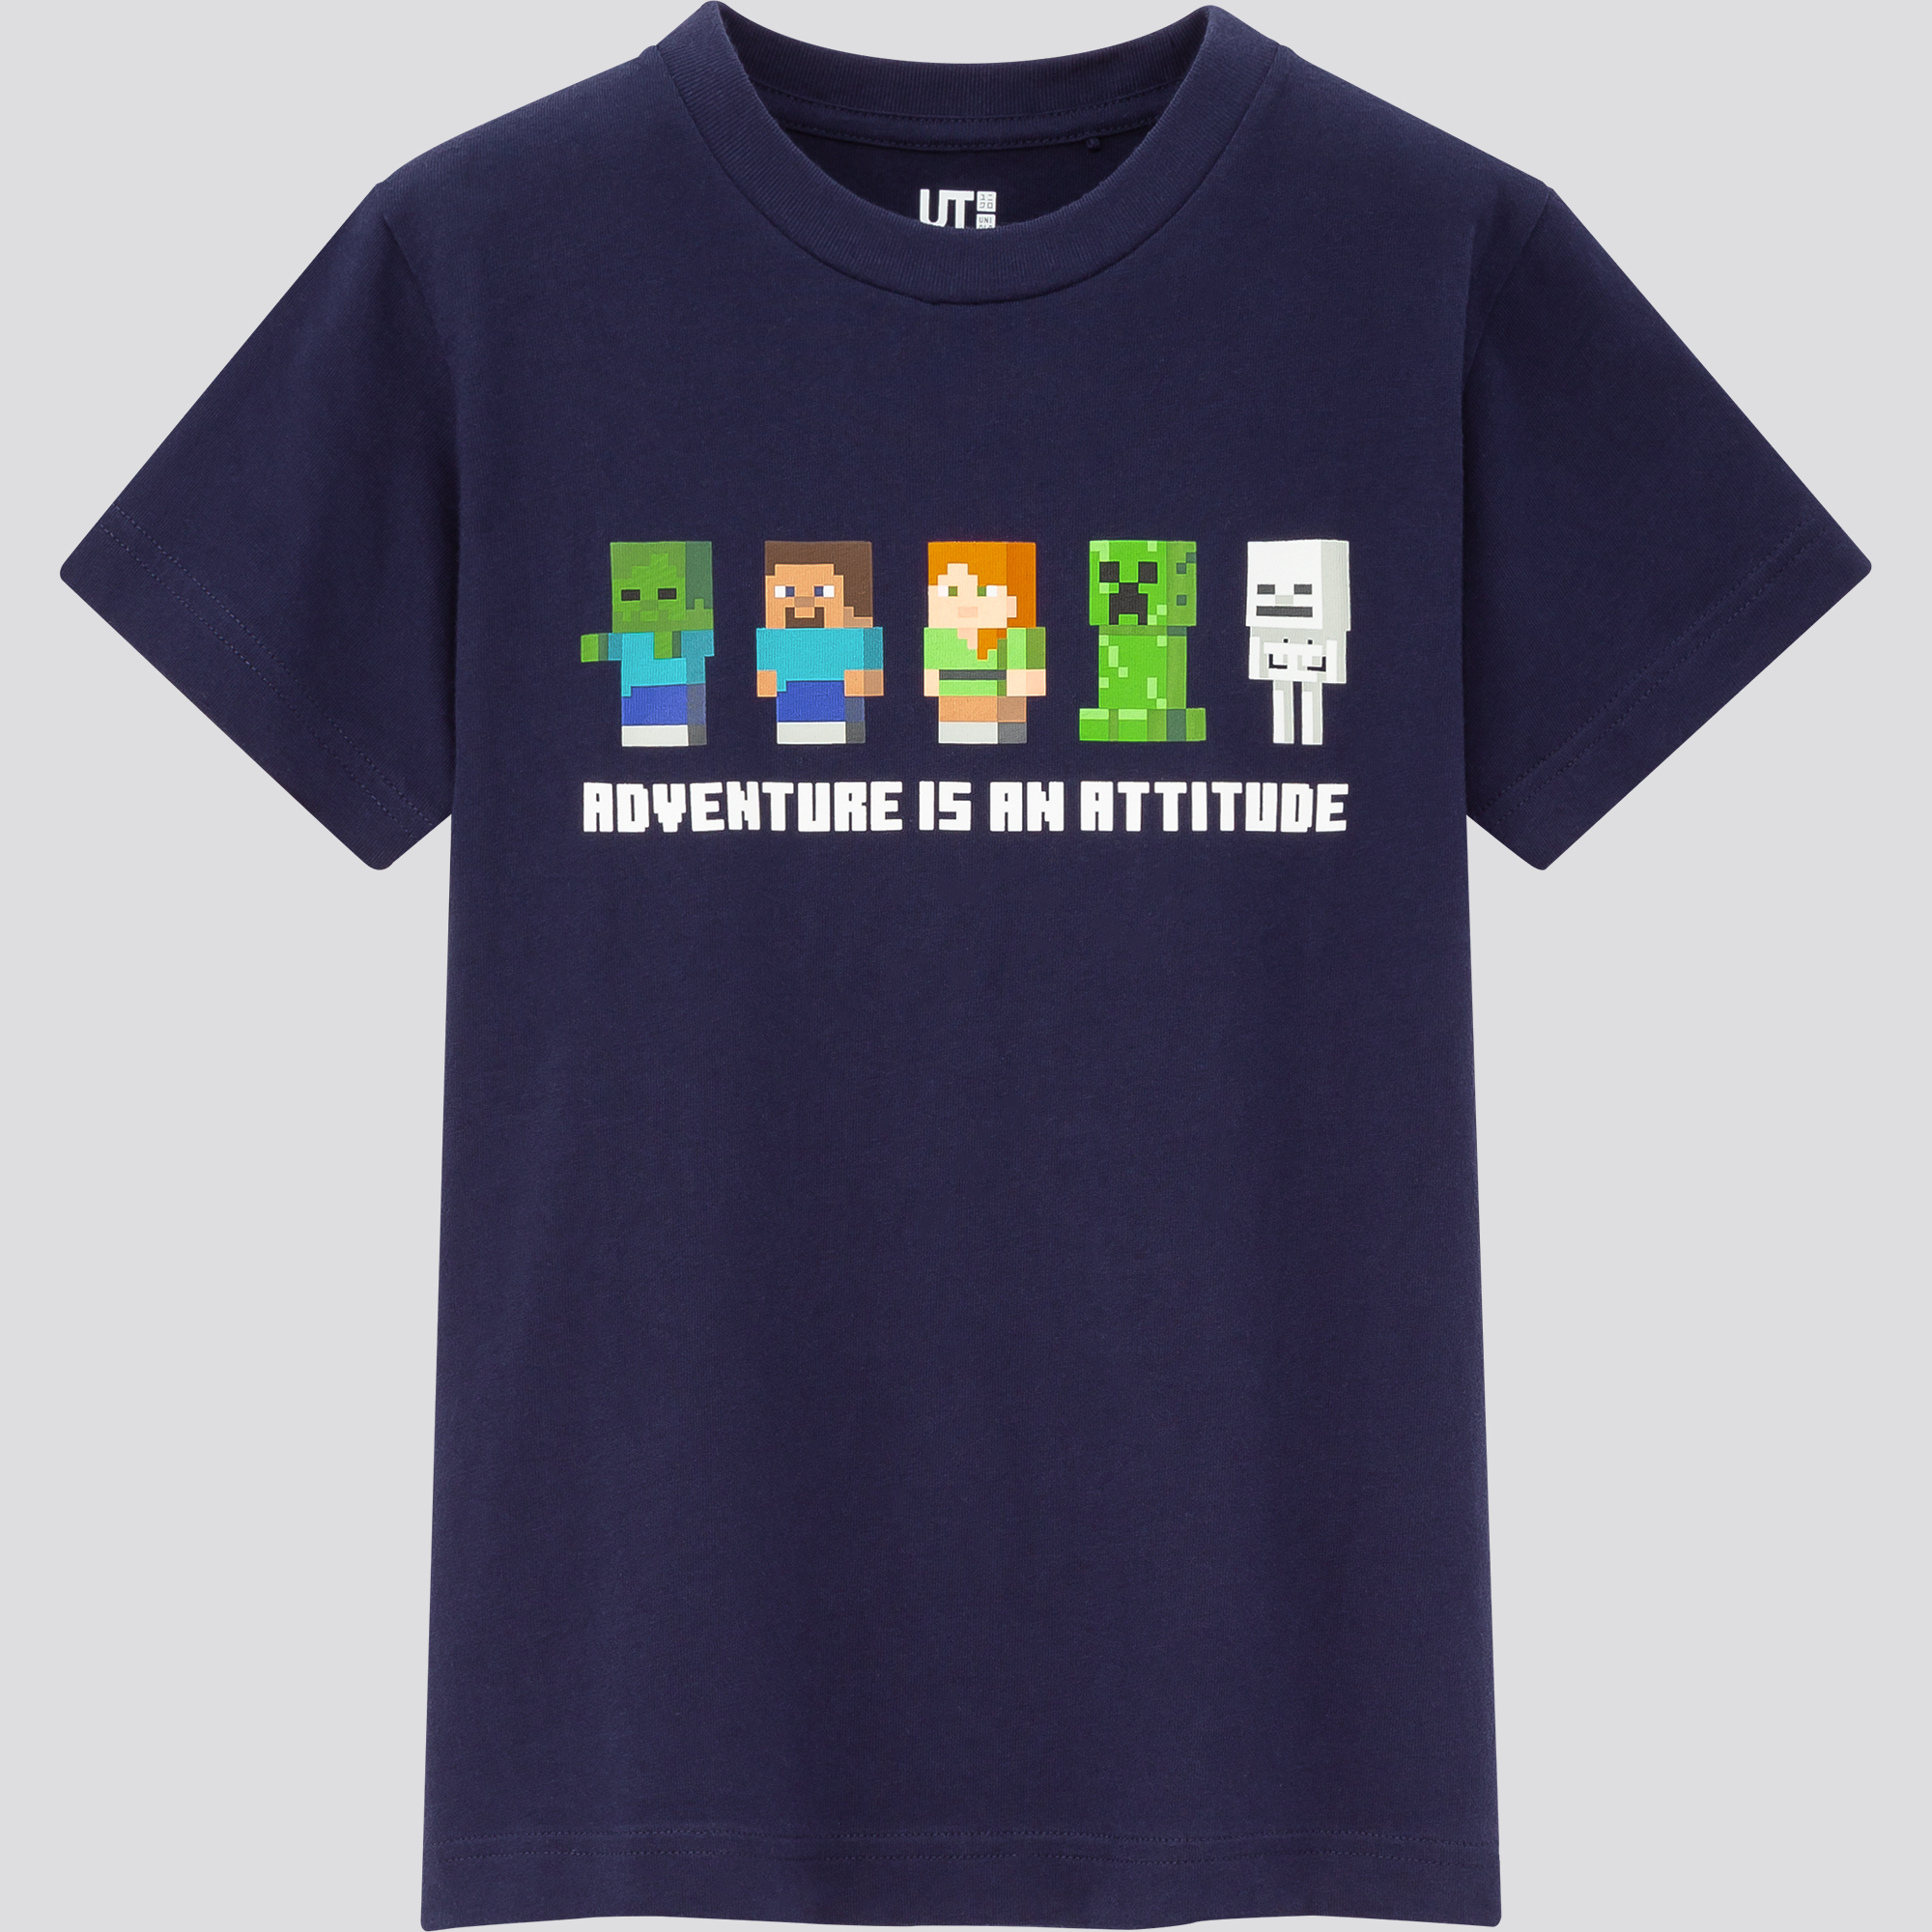 【日本限定モデル】 【Burberry】マインクラフトコラボ コットンTシャツ Tシャツ・カットソー サイズを選択してください:XXL